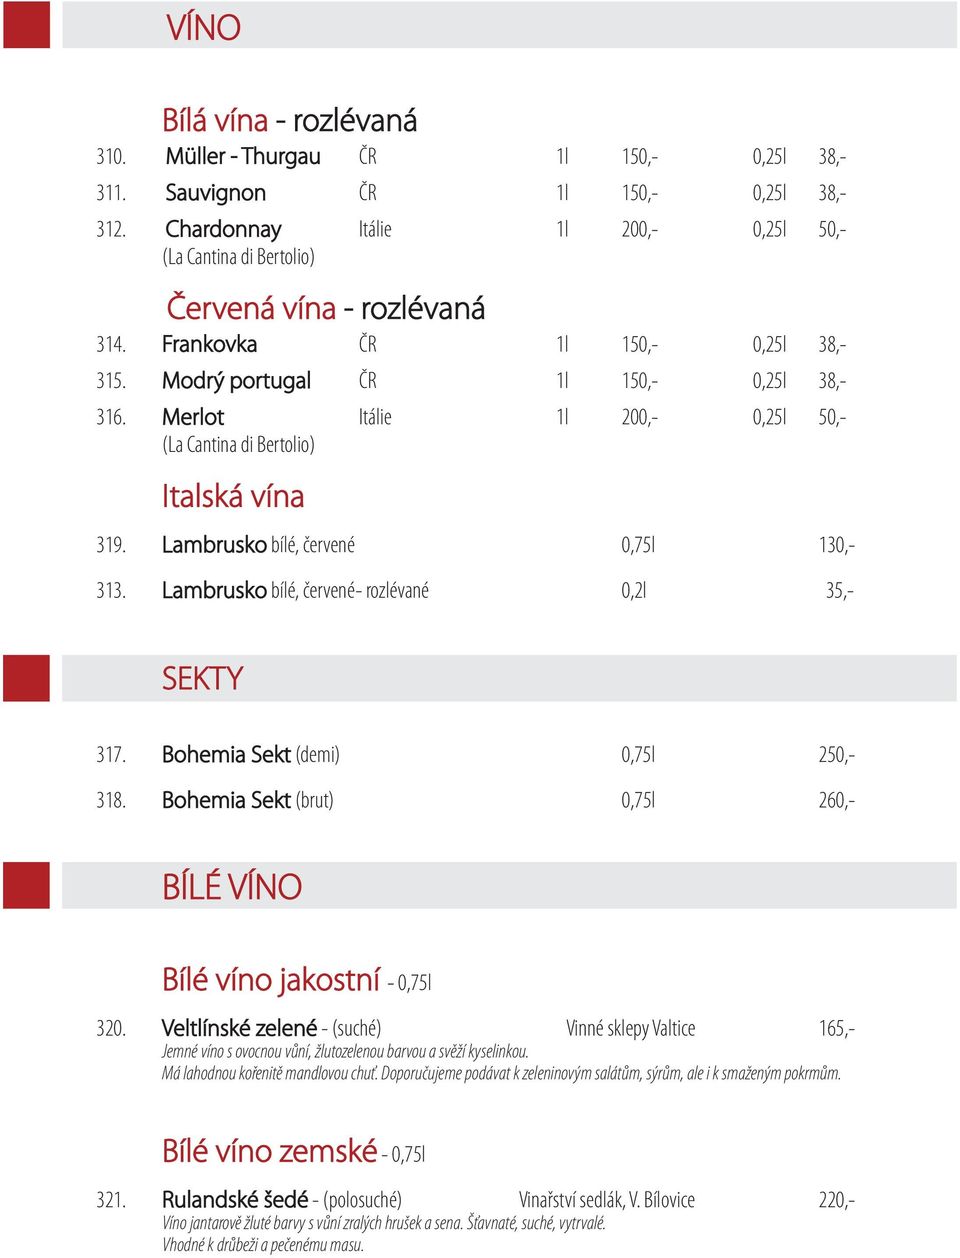 Merlot Itálie 1l 200,- 0,25l 50,- (La Cantina di Bertolio) Italská vína 319. Lambrusko bílé, červené 0,75l 130,- 313. Lambrusko bílé, červené- rozlévané 0,2l 35,- SEKTY 317.